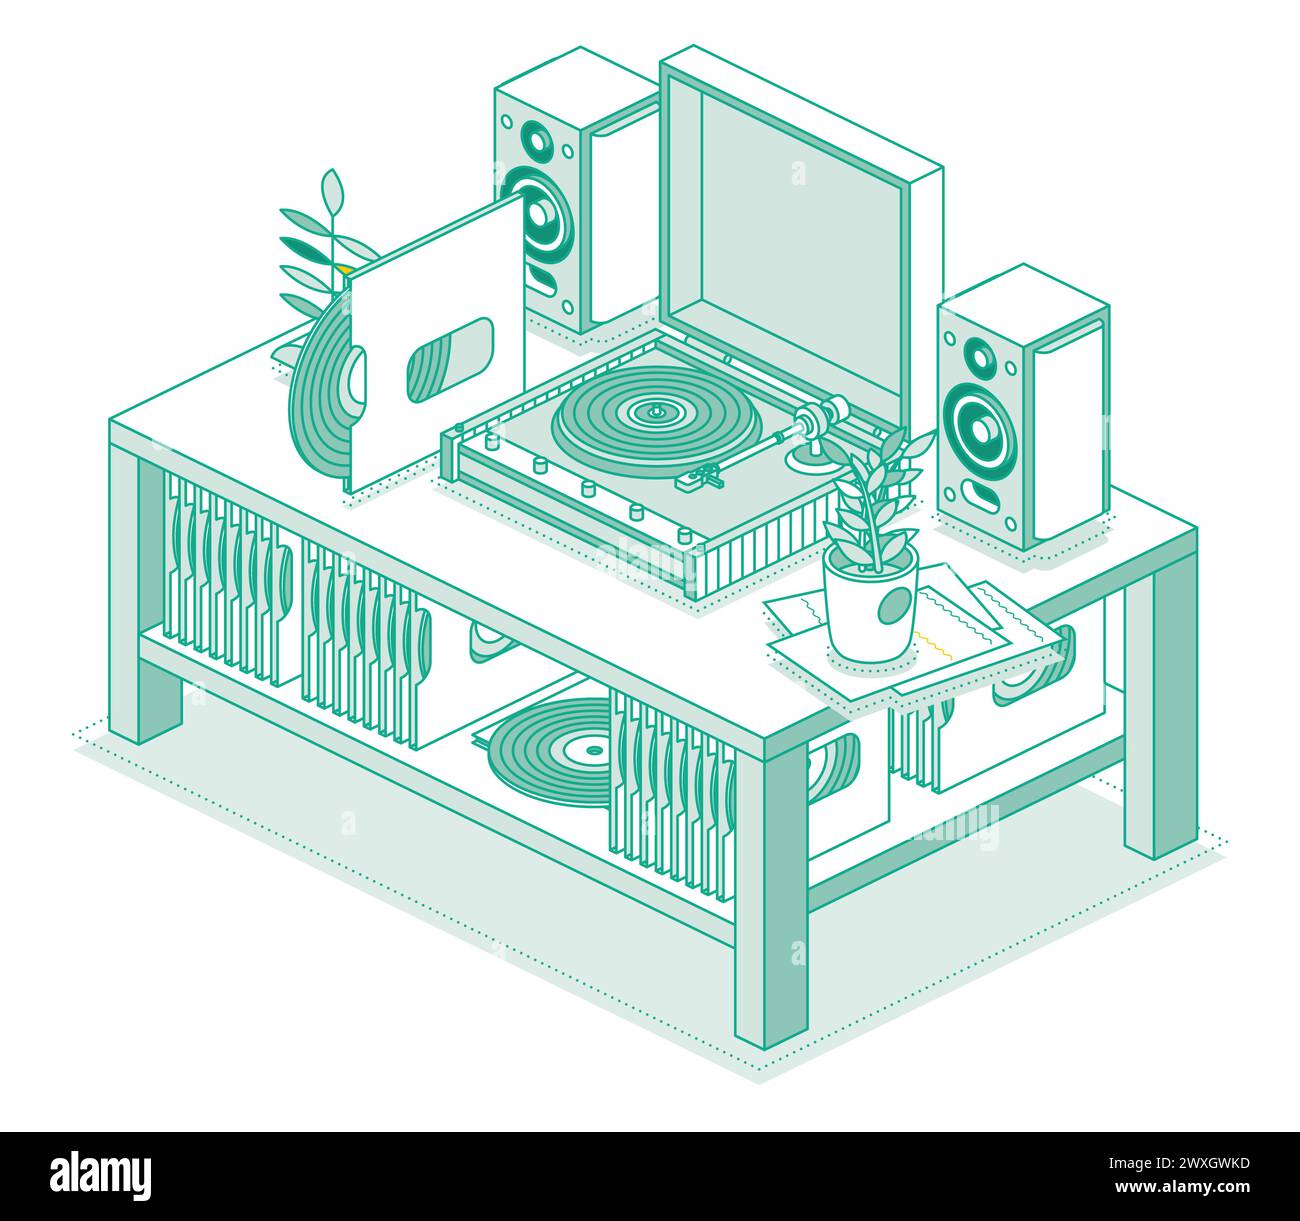 Isometrischer Vinyl-LP-Plattenspieler mit Diskette. Tisch mit Recorder und zwei Lautsprechern. Stereoanlage. Objekte auf weißem Hintergrund isoliert. Stock Vektor